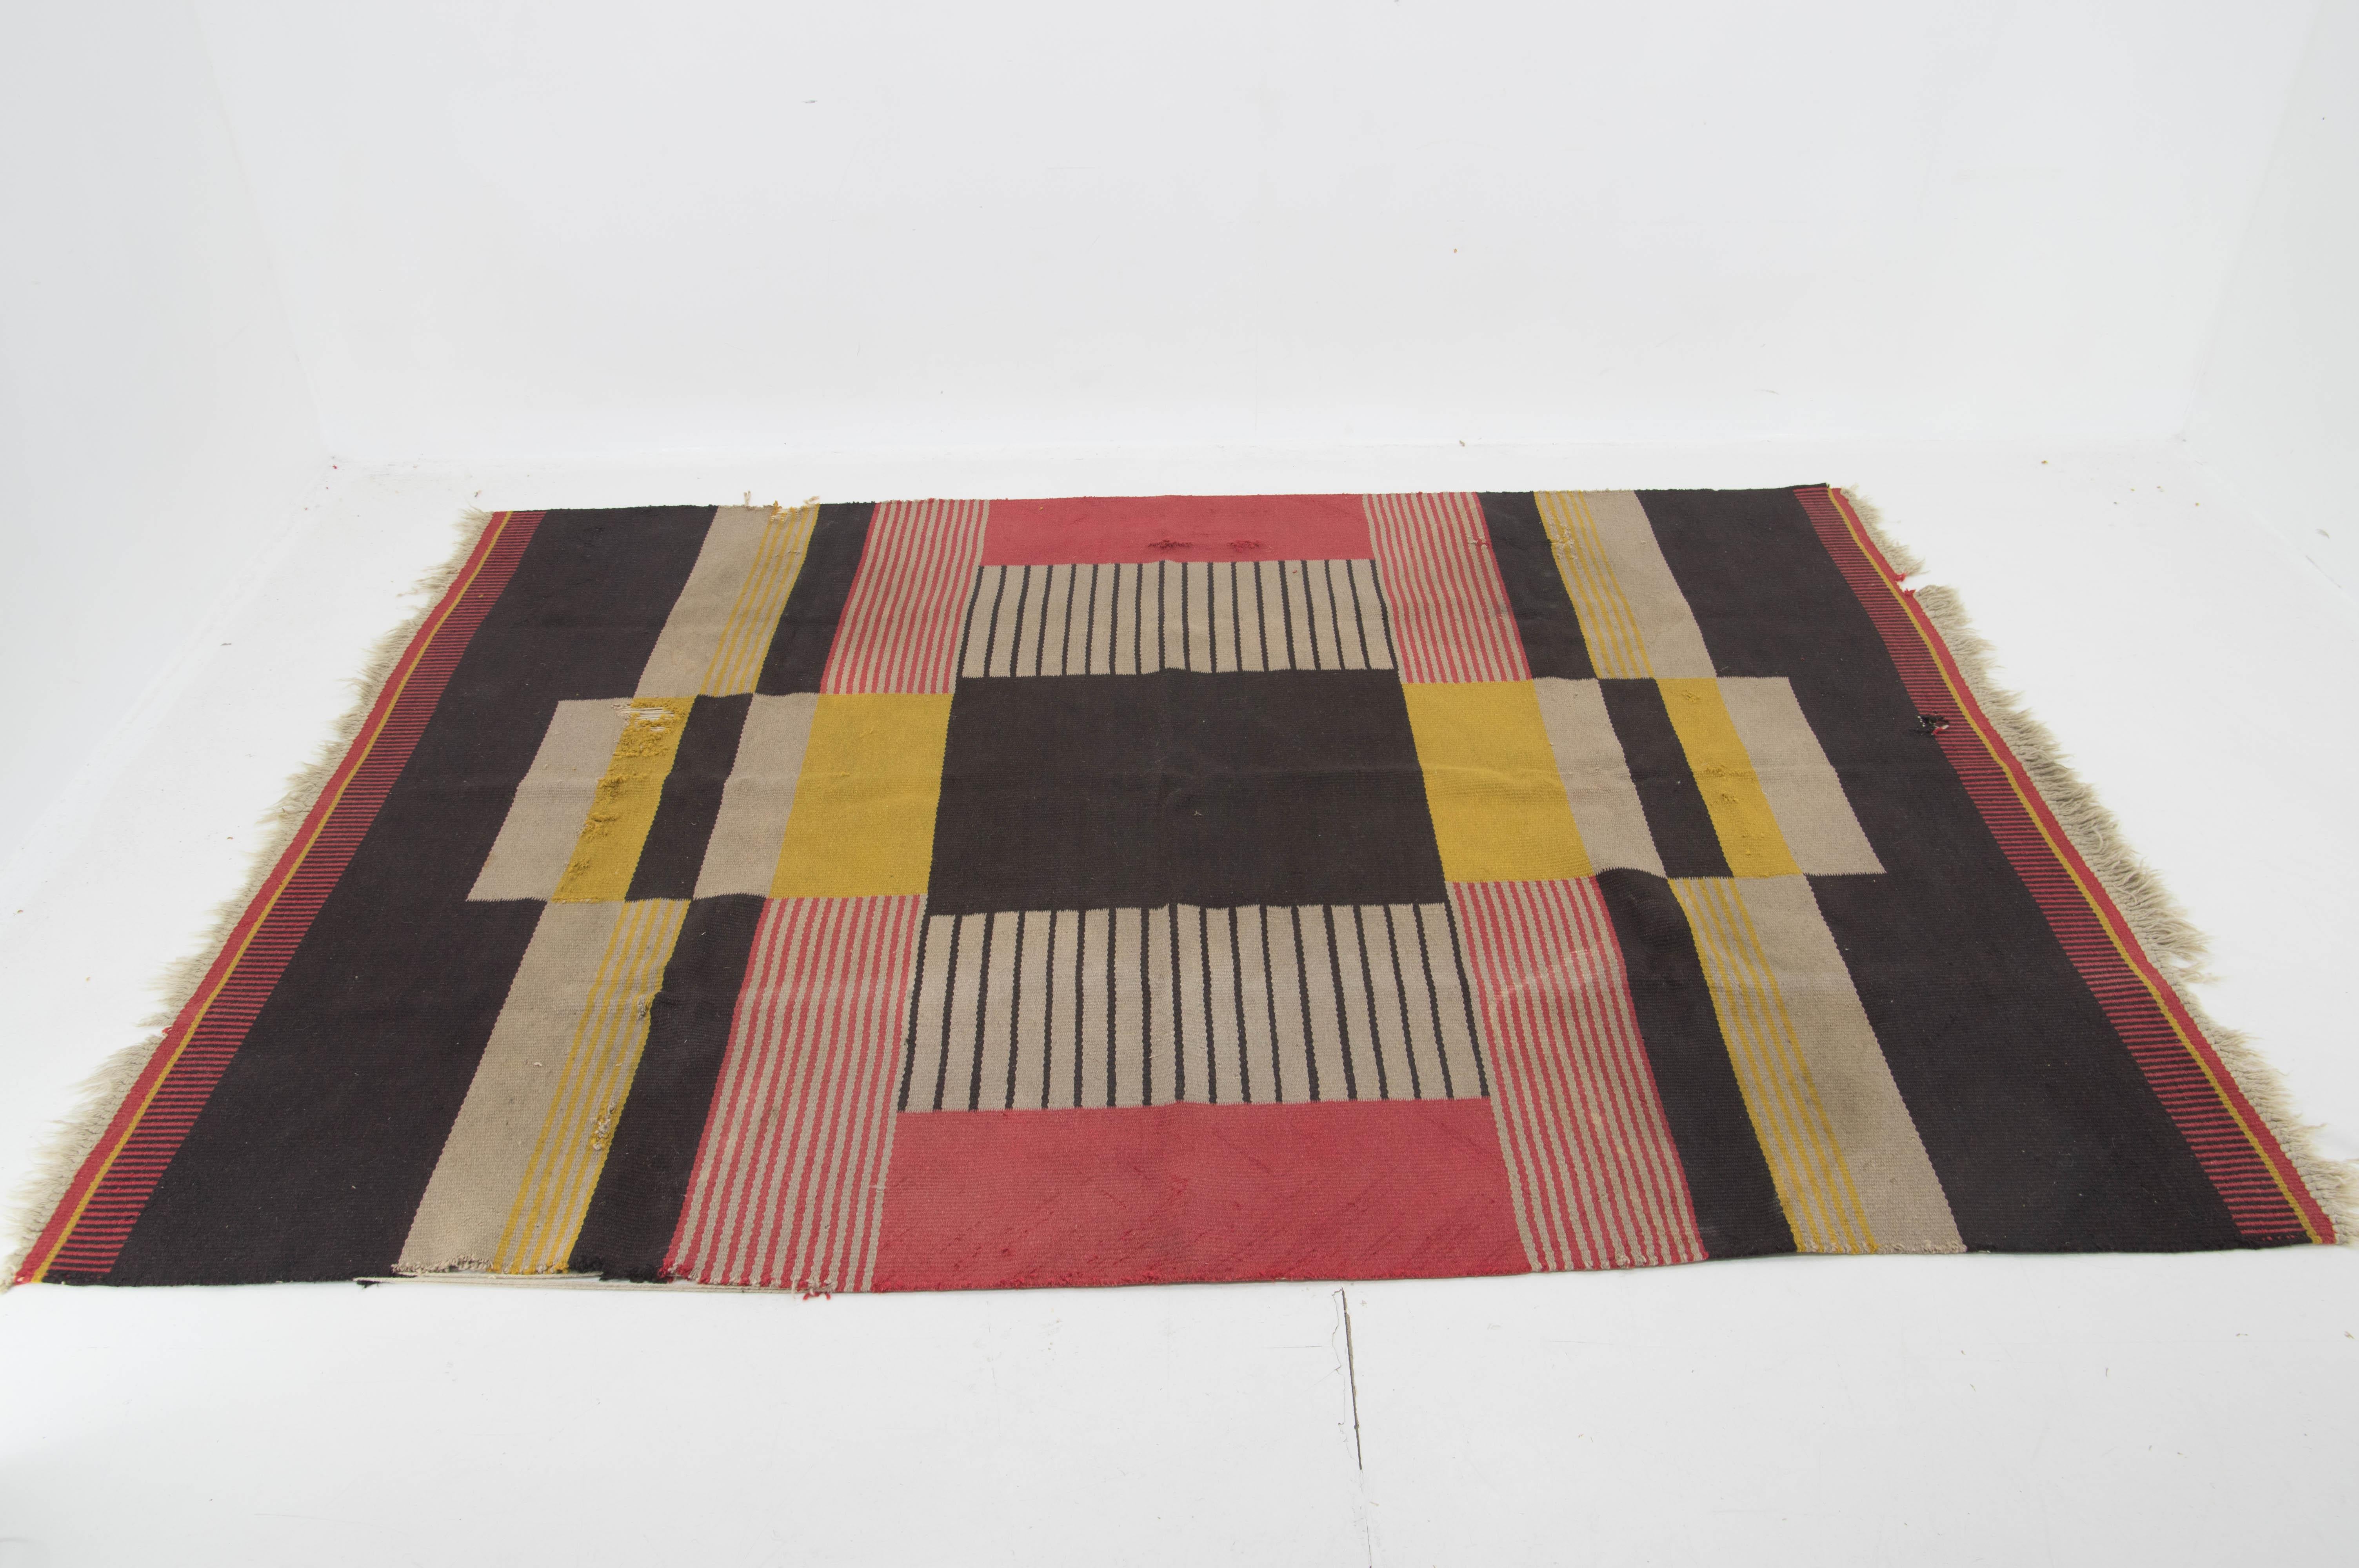 Rare tapis en laine dessiné par l'icône du design textil tchèque Antonin Kybal. L'une des plus grandes versions de ce type.
La moquette présente de fortes traces de liquide et quelques dommages visibles sur les photos.